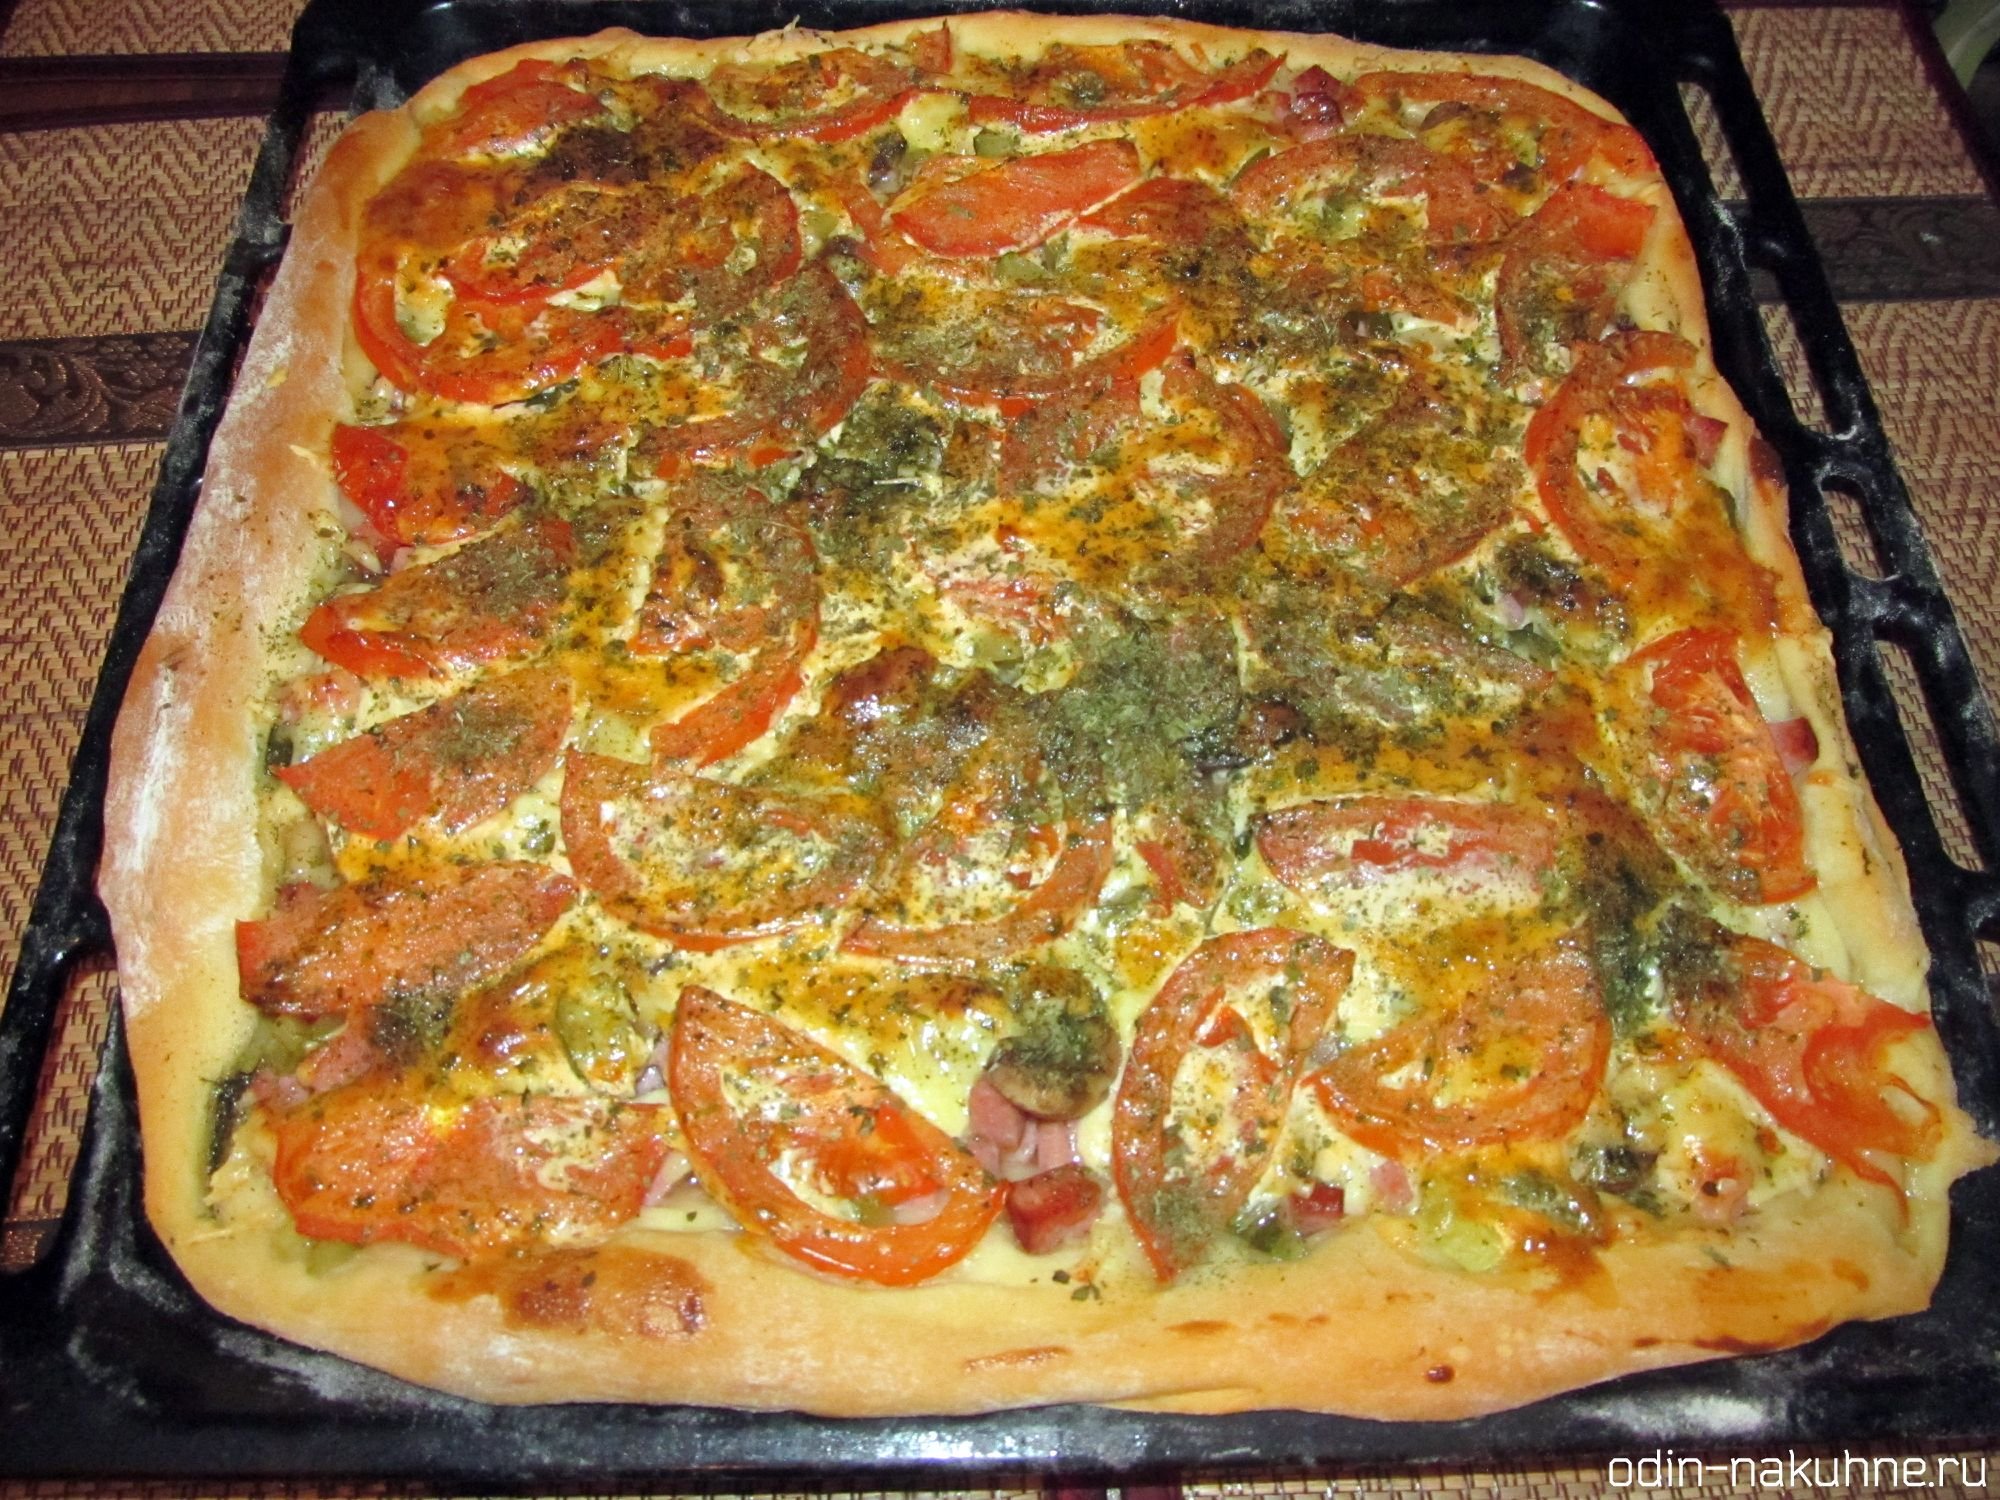 фото готовой пиццы в домашних условиях в духовке фото 97